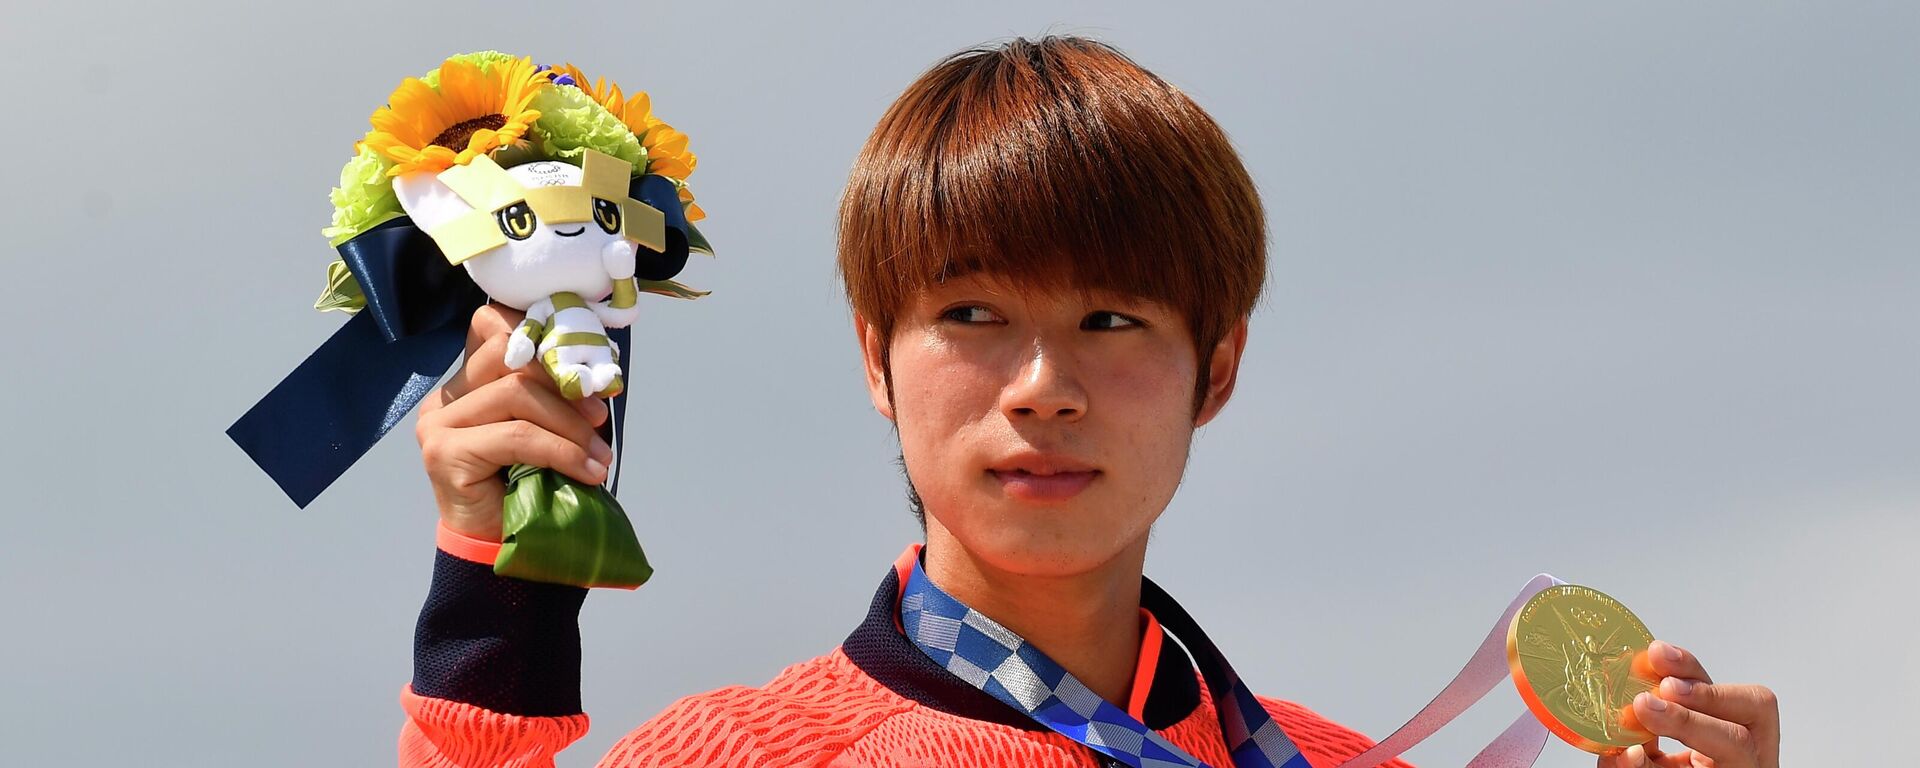 El skater japonés Yuto Horigome posa con su medalla de oro durante la ceremonia de entrega de premios, el 25 de julio de 2021, Tokio - Sputnik Mundo, 1920, 25.07.2021